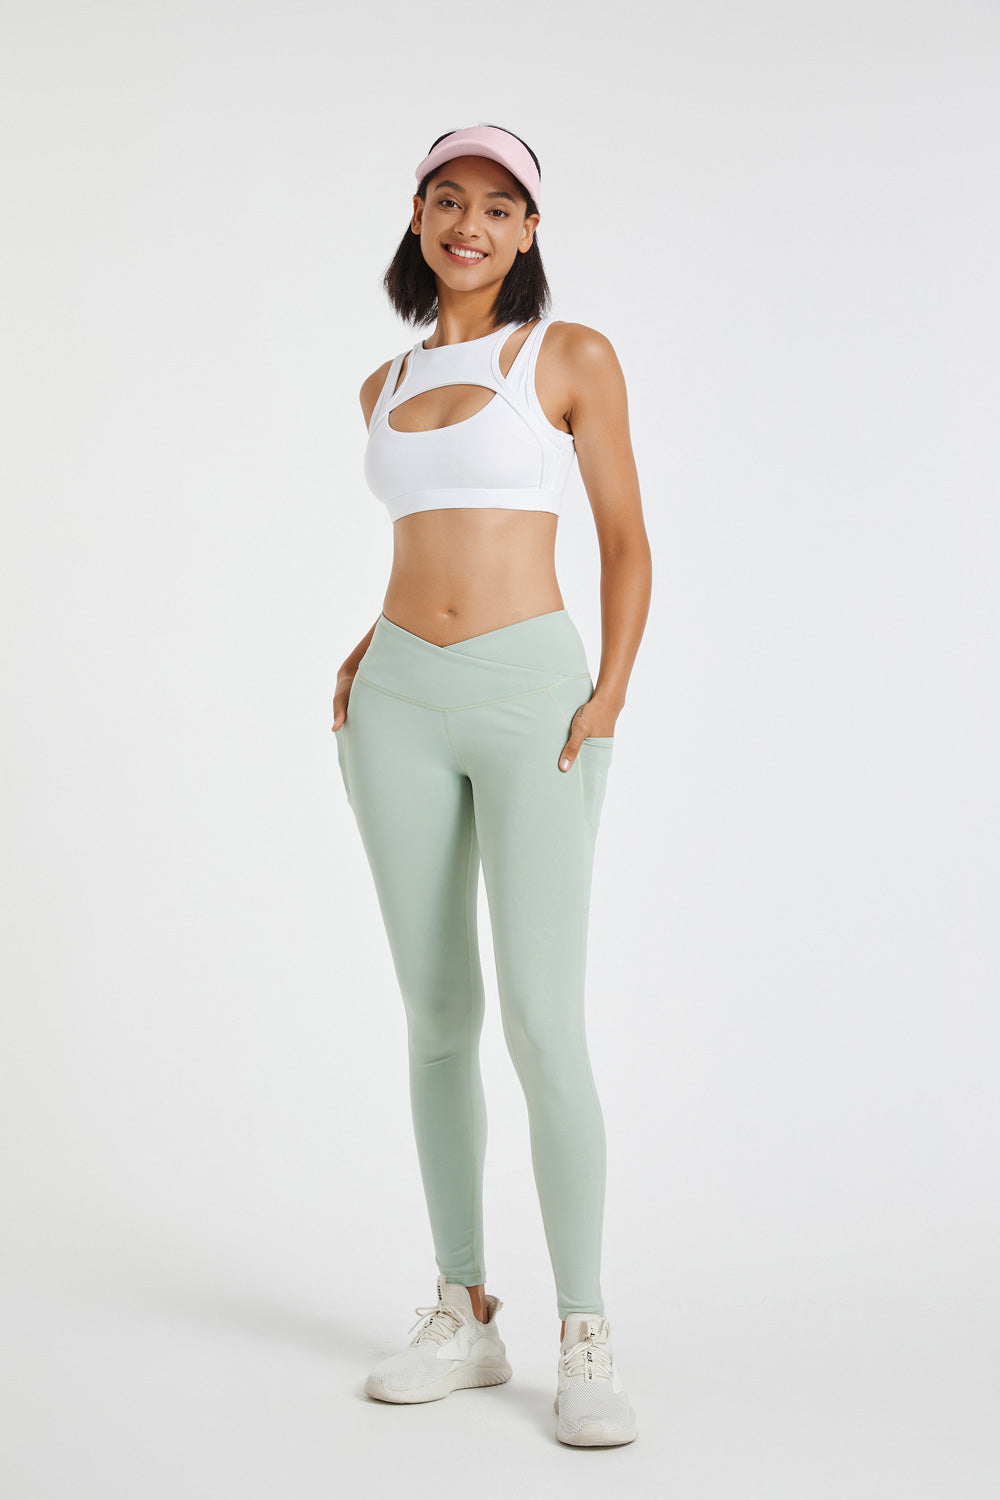 Light Green Yoga Leggings, Best Pastel Green Women's Long Gym